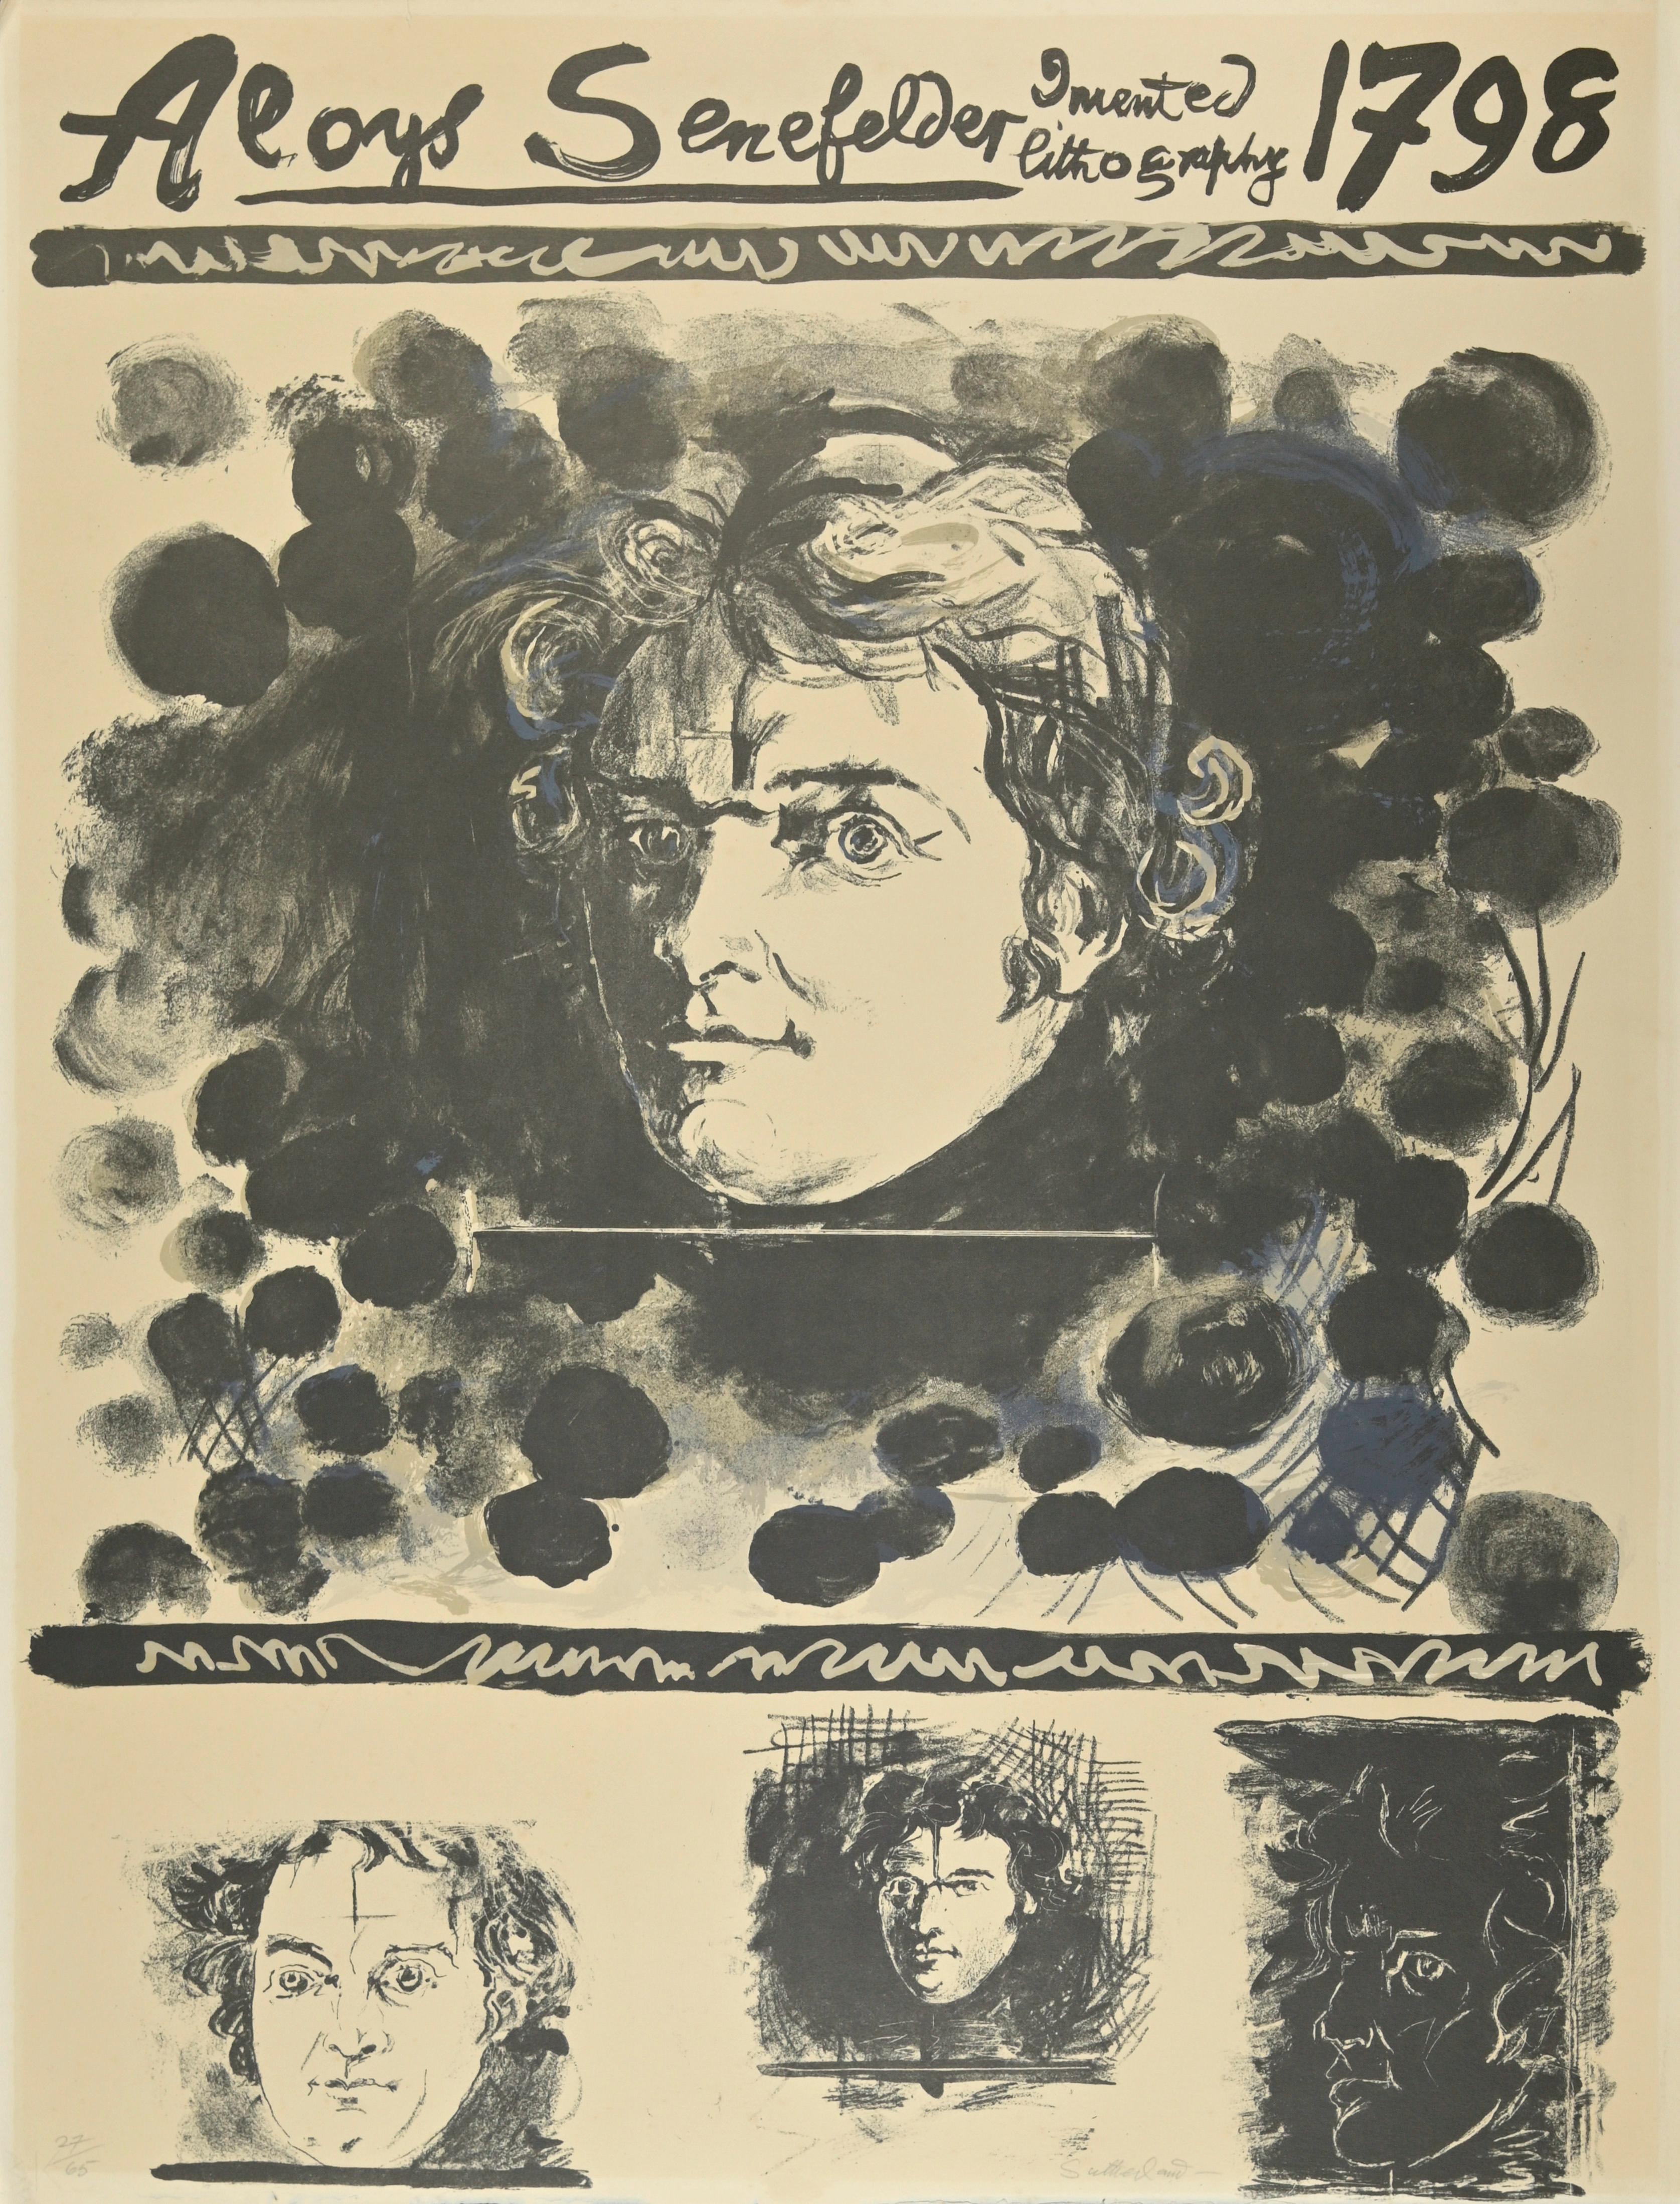 Portrait est une lithographie réalisée par Graham Sutherland en 1972.

Édition numérotée 58/65.

Dimensions : 65,5 x 50.

En très bonnes conditions.

Création originale du peintre anglais Graham Sutherland (1903-1980), l'un des plus importants